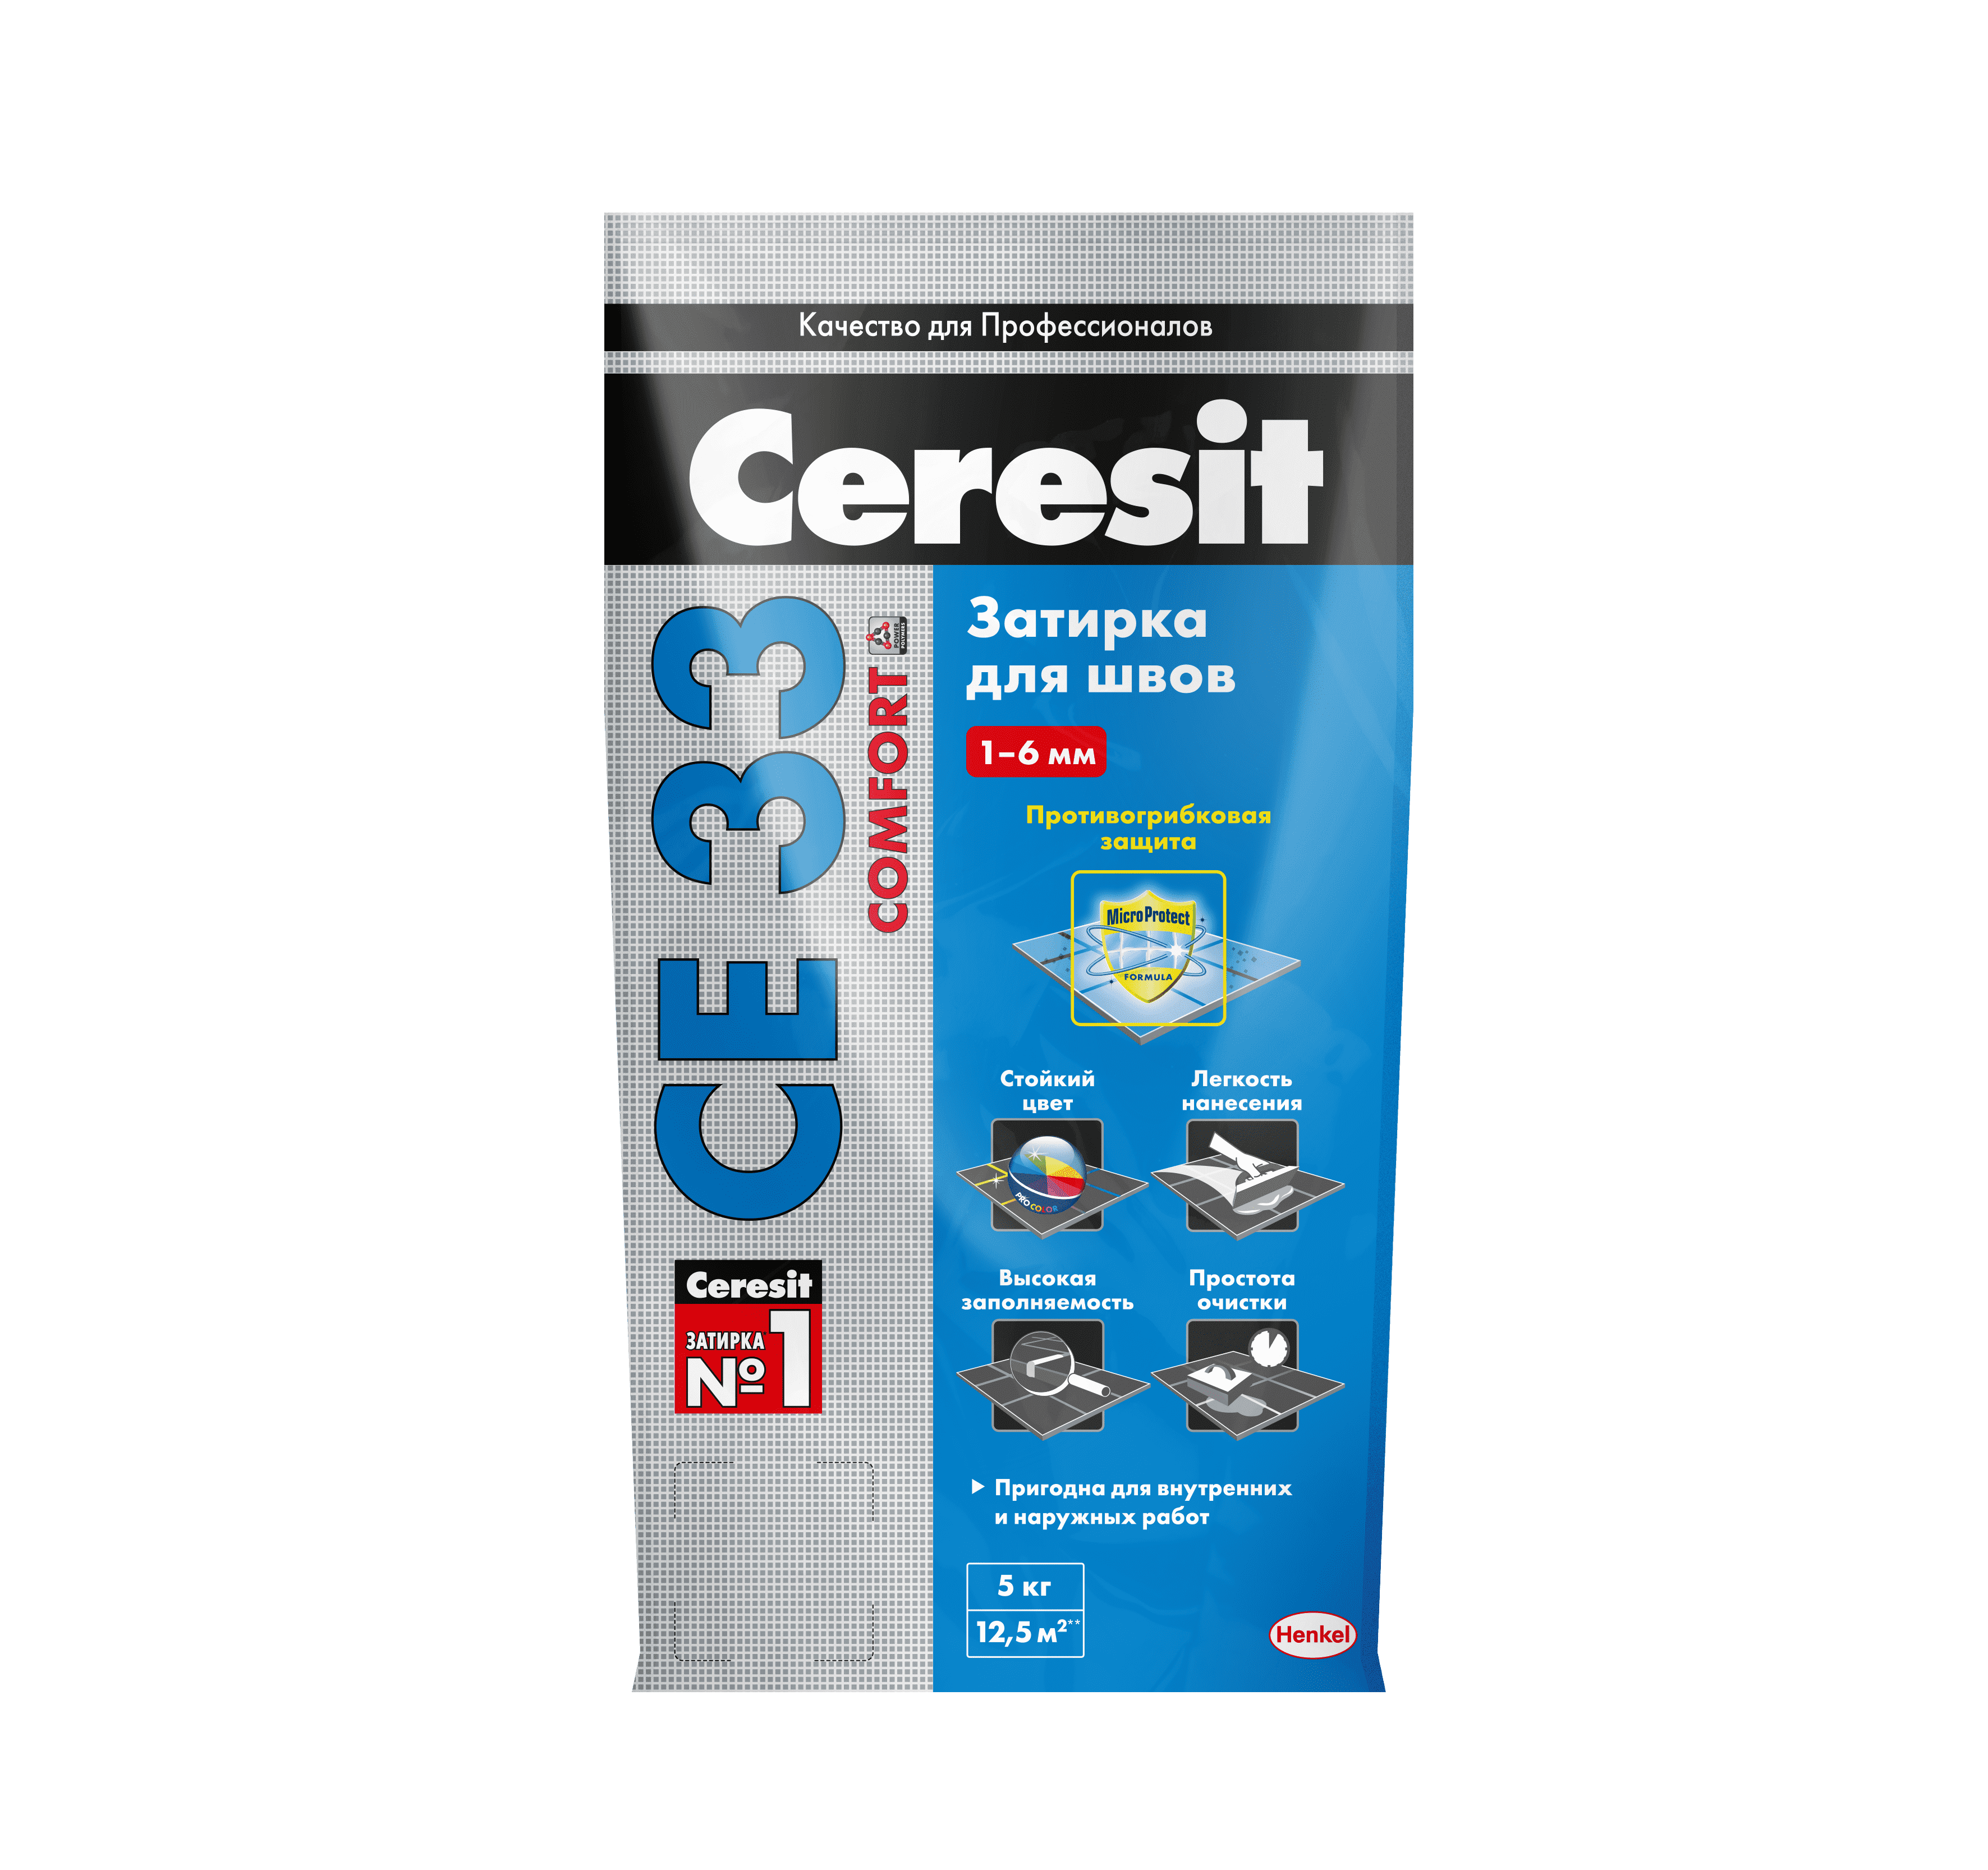 Затирка Ceresit CE 33 (2 кг) багамы